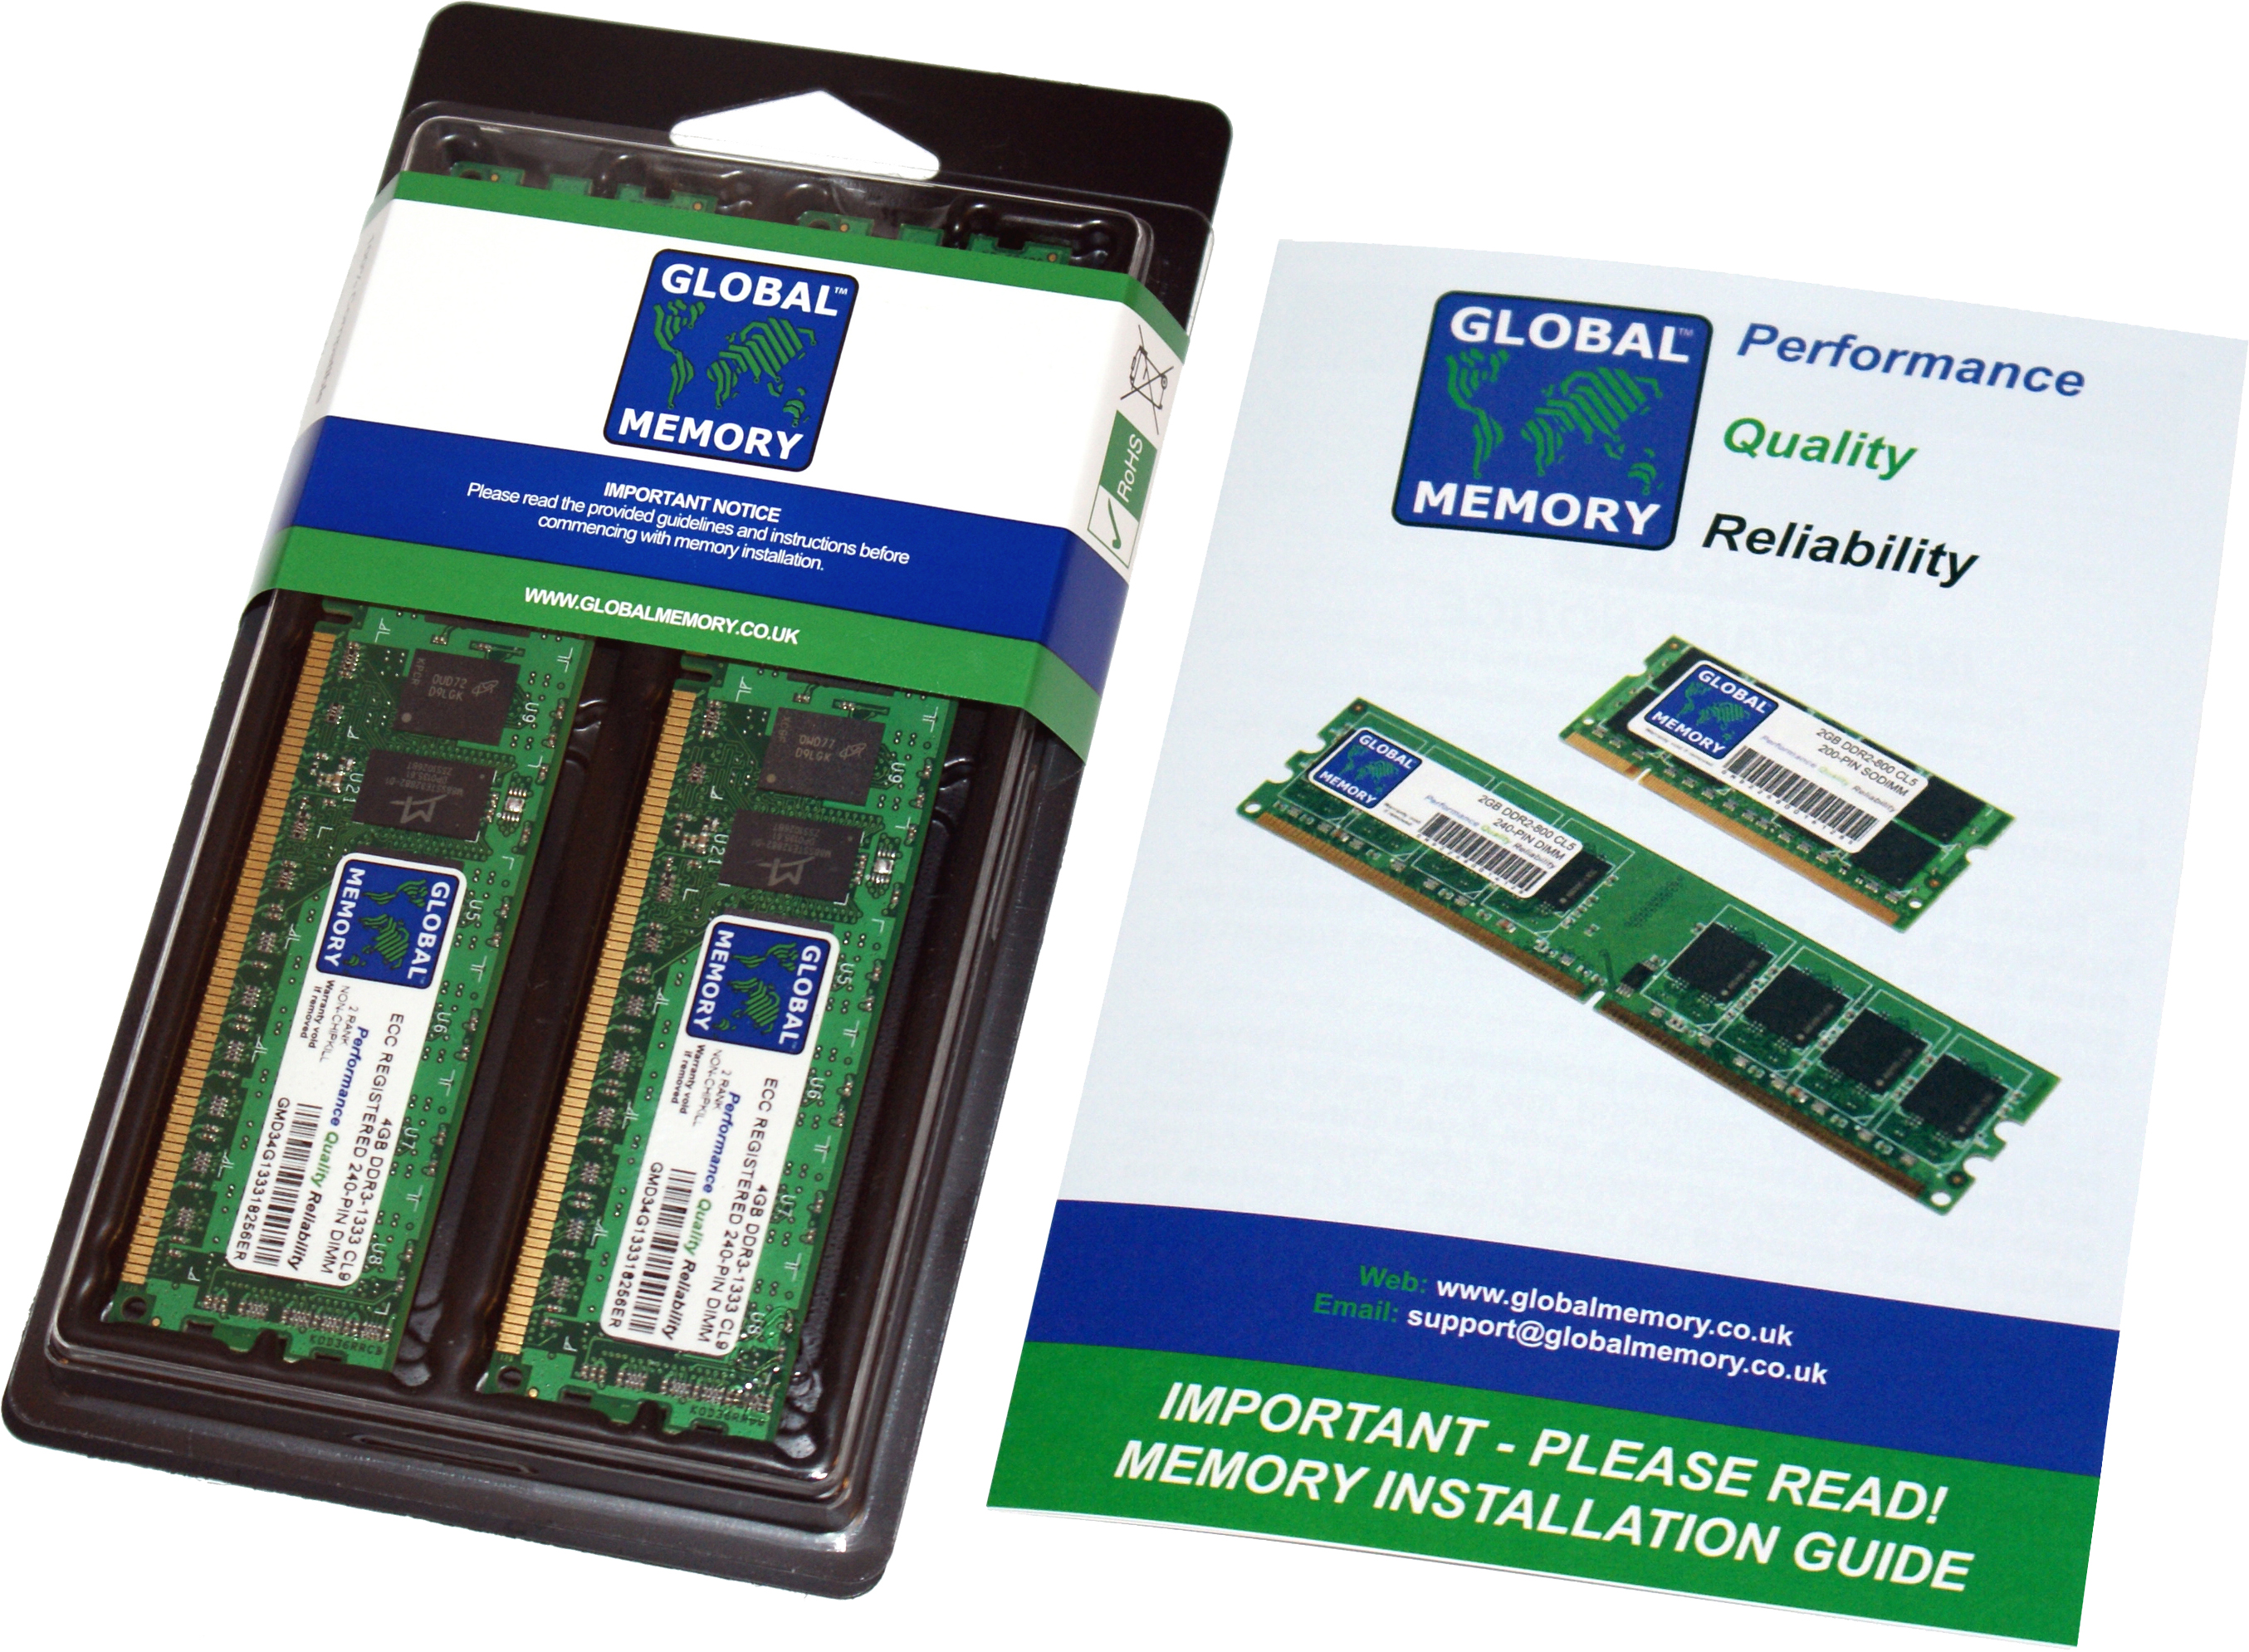 32GB (2 x 16GB) DDR4 2666MHz PC4-21300 288-PIN ECC REGISTERED DIMM (RDIMM) MEMORY RAM KIT FOR HEWLETT-PACKARD SERVERS/WORKSTATIONS (4 RANK KIT CHIPKILL)